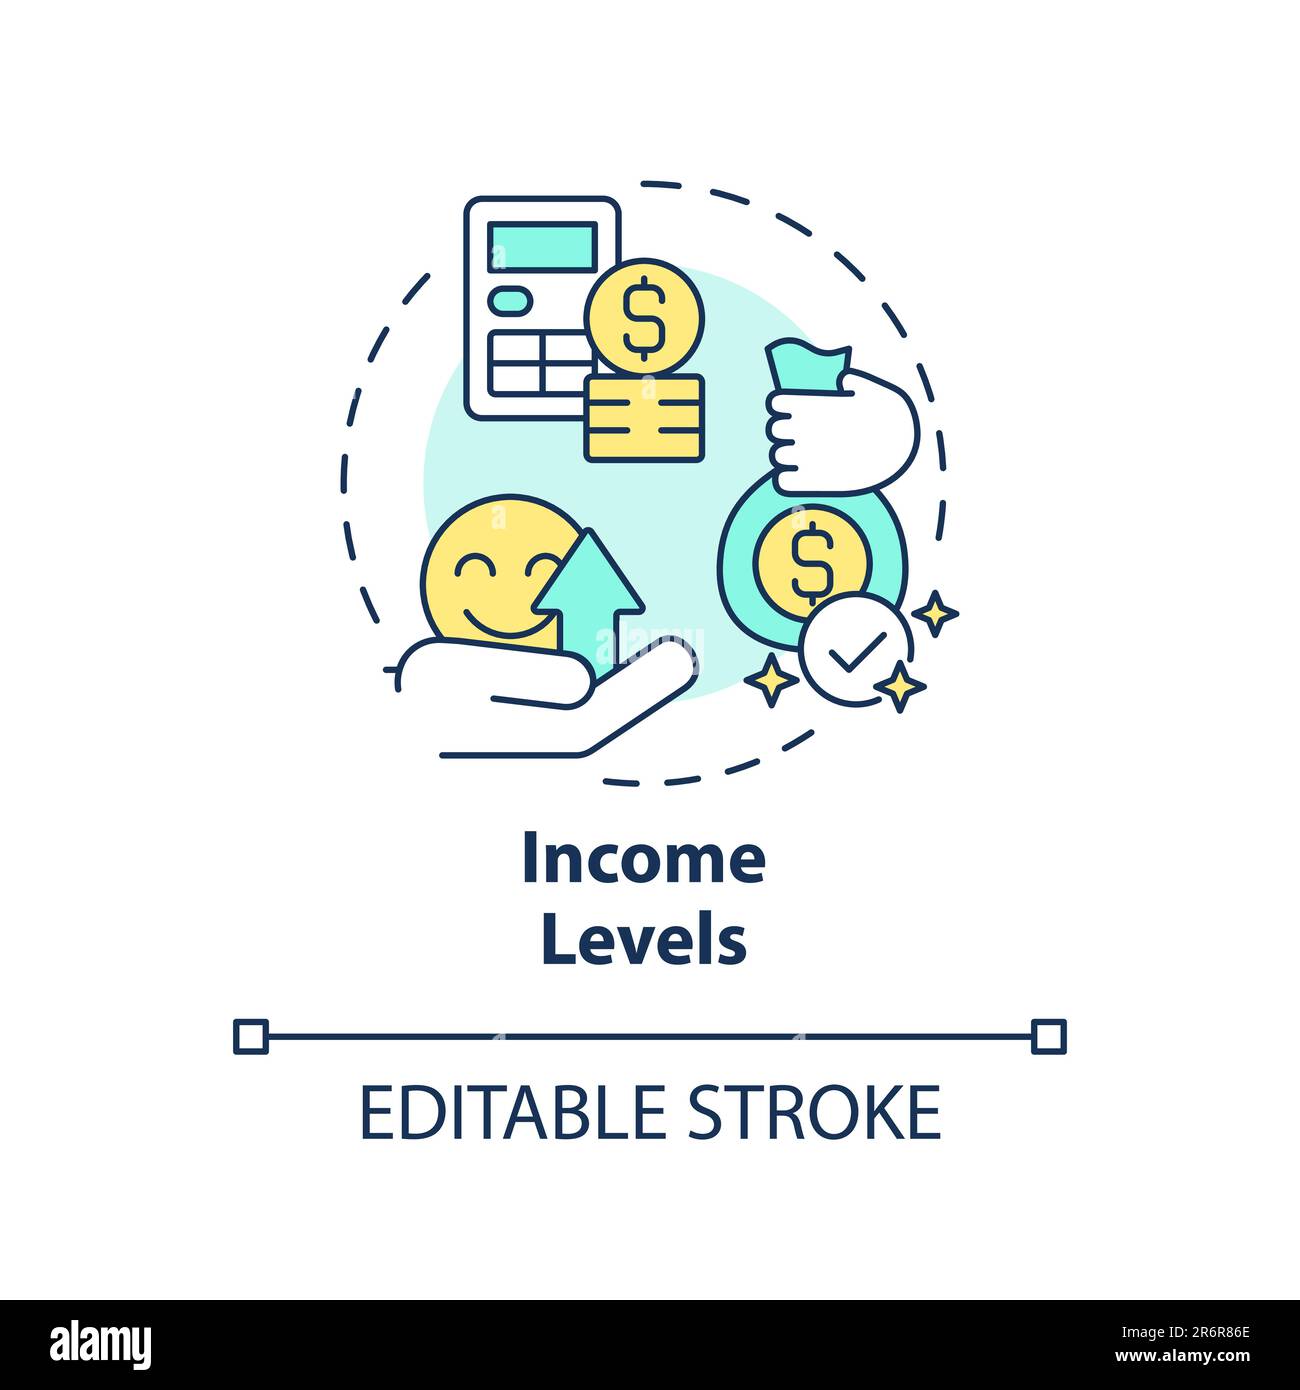 Income levels concept icon Stock Vector